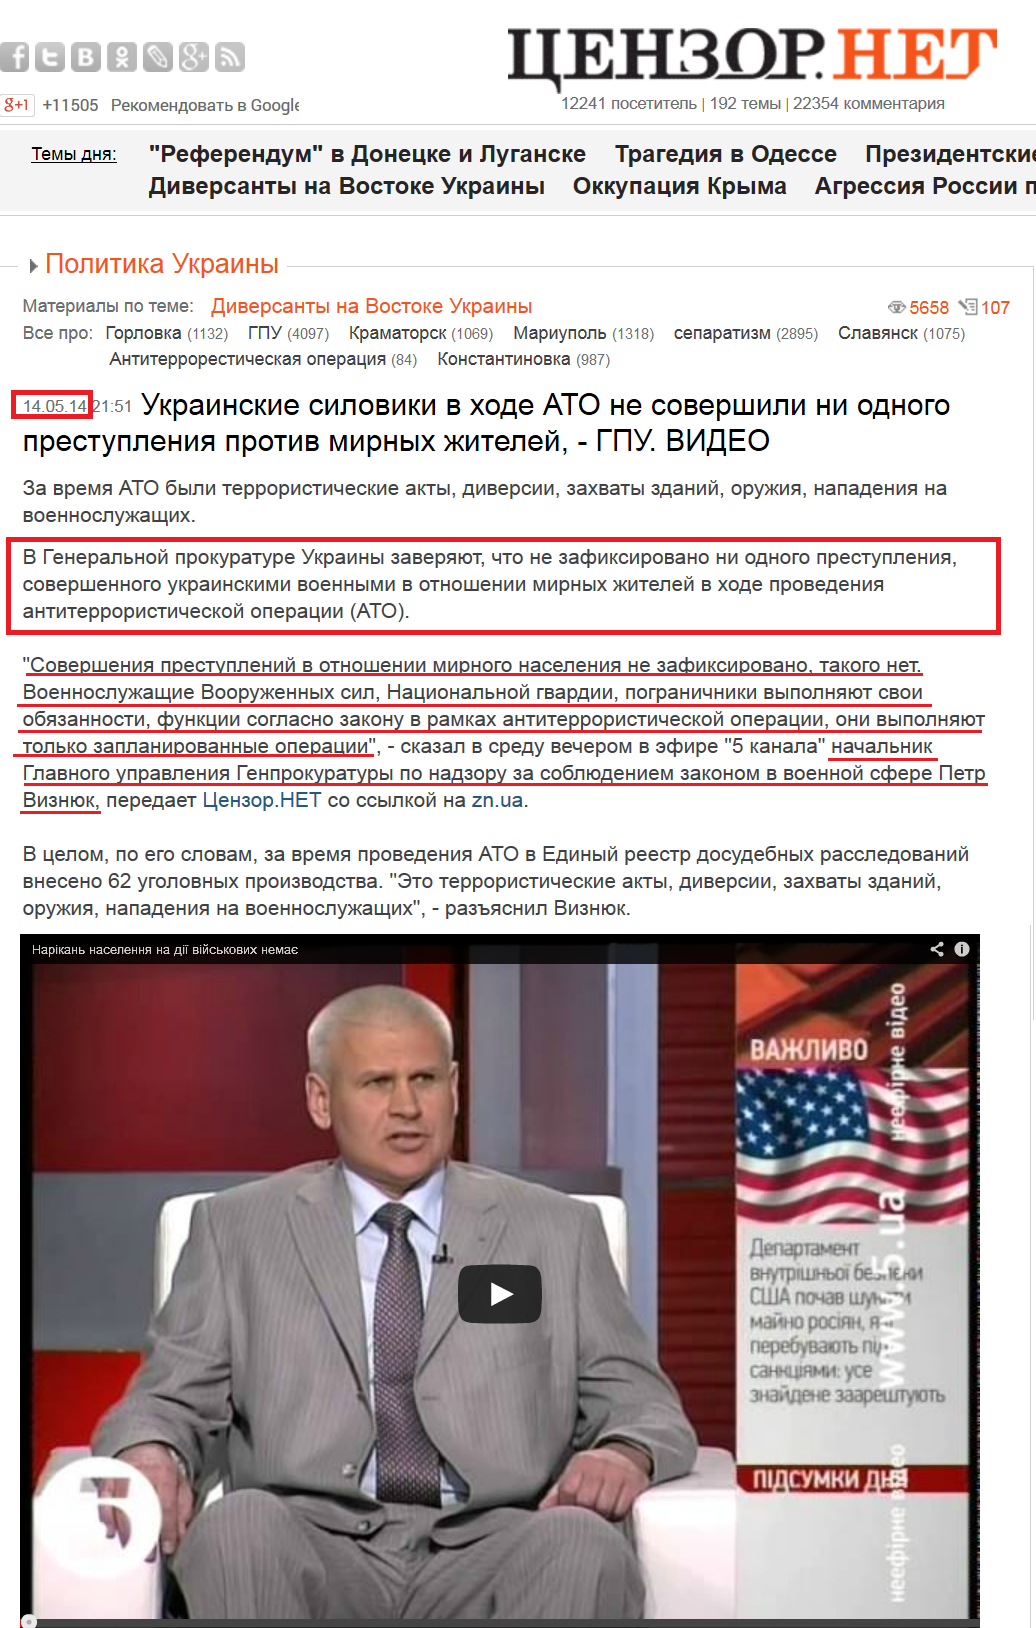 http://censor.net.ua/video_news/285350/ukrainskie_siloviki_v_hode_ato_ne_sovershili_ni_odnogo_prestupleniya_protiv_mirnyh_jiteleyi_gpu_video